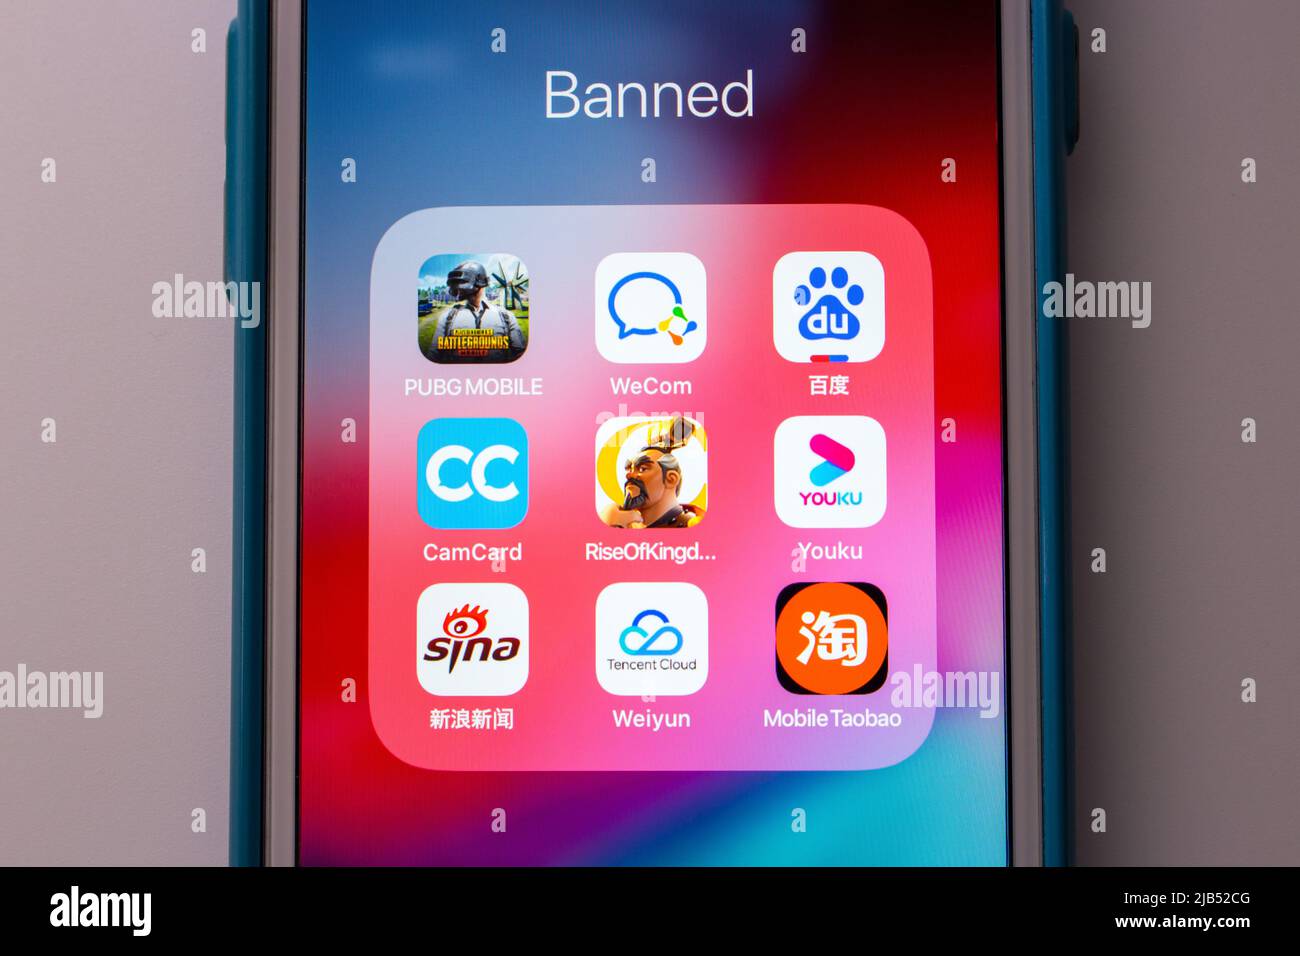 Kumamoto / JAPAN - Okt 2 2020 : PUBG & beliebte chinesische Apps auf dem iPhone. Indien verbietet PUBG, Baidu und über 100 Apps, die mit China verknüpft sind Stockfoto